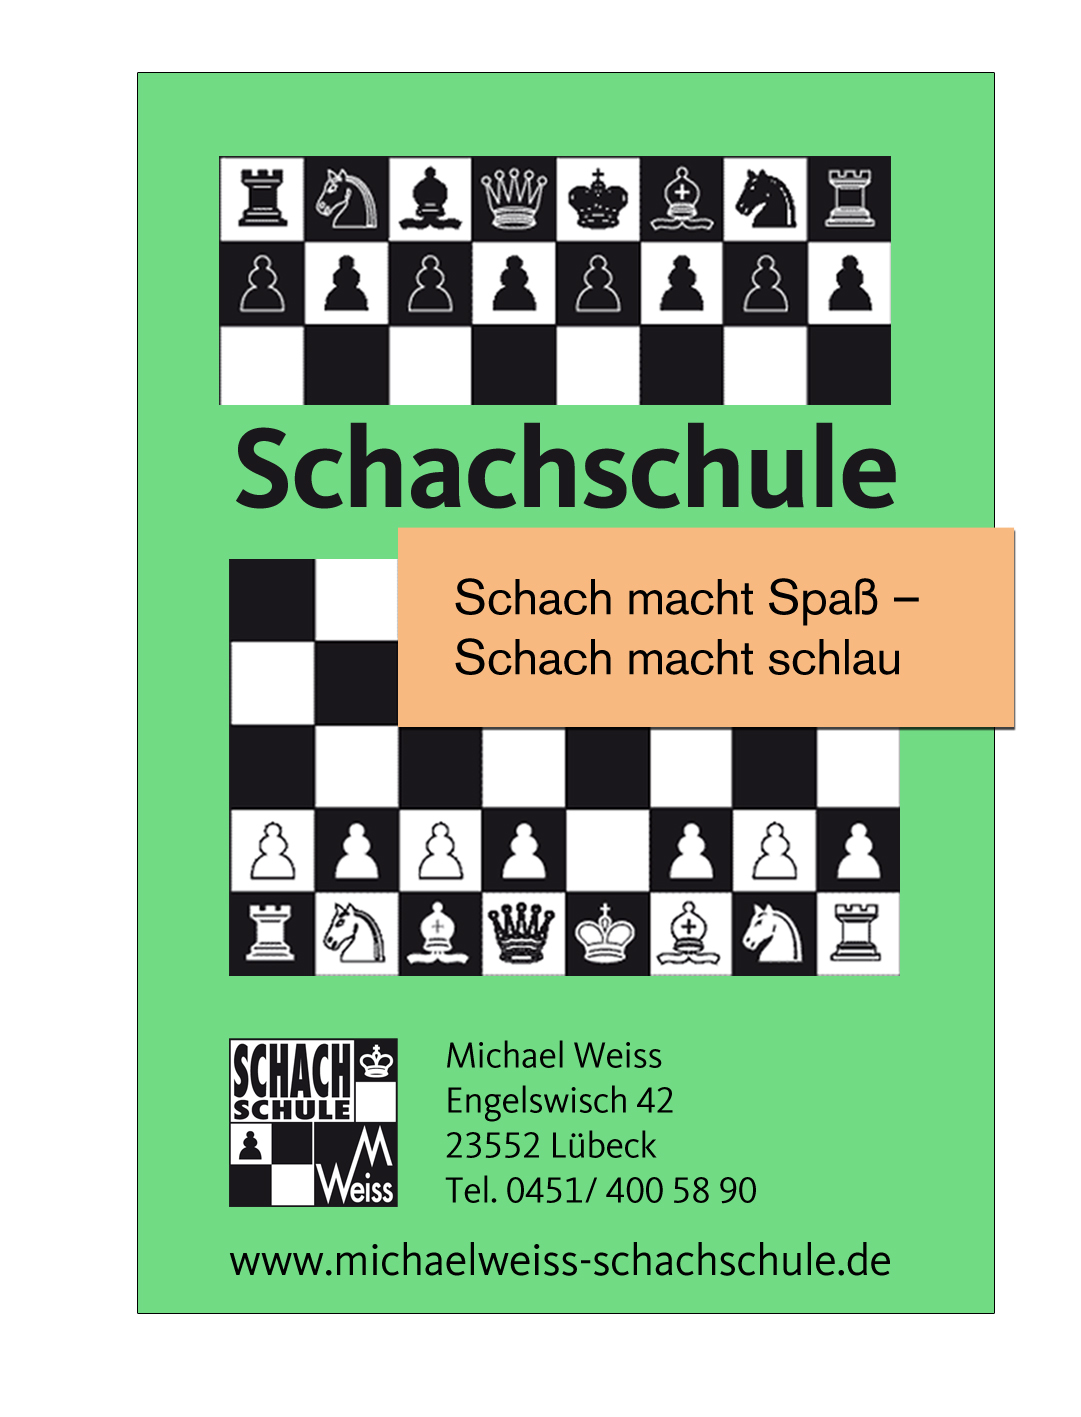 Schachschule Michael Weiss